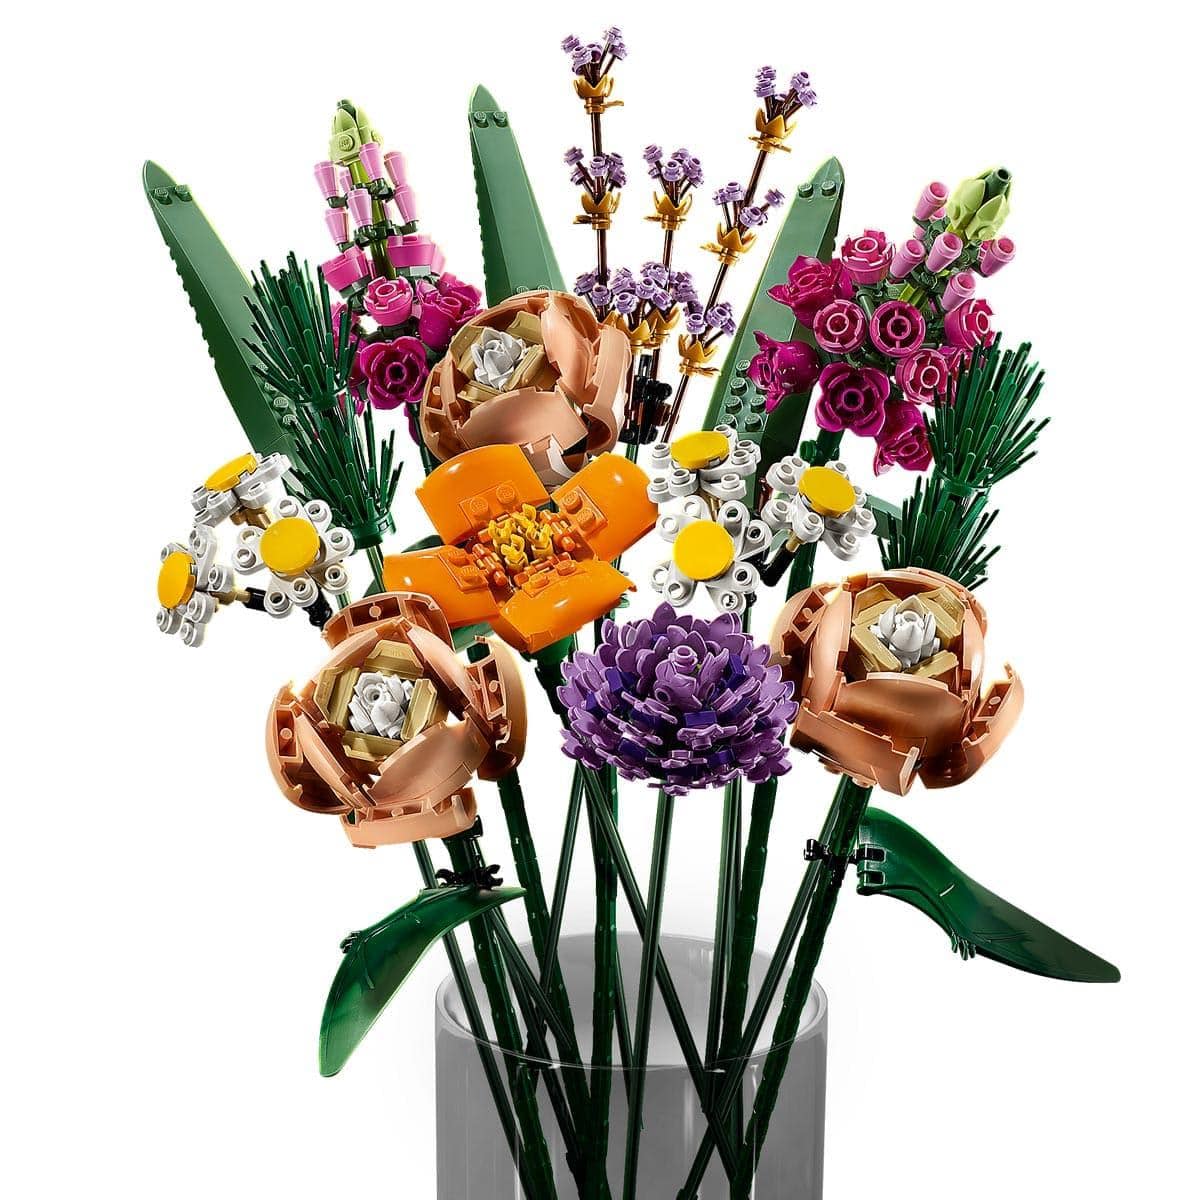 LEGO Icons 10313 pas cher, Bouquet de fleurs sauvages